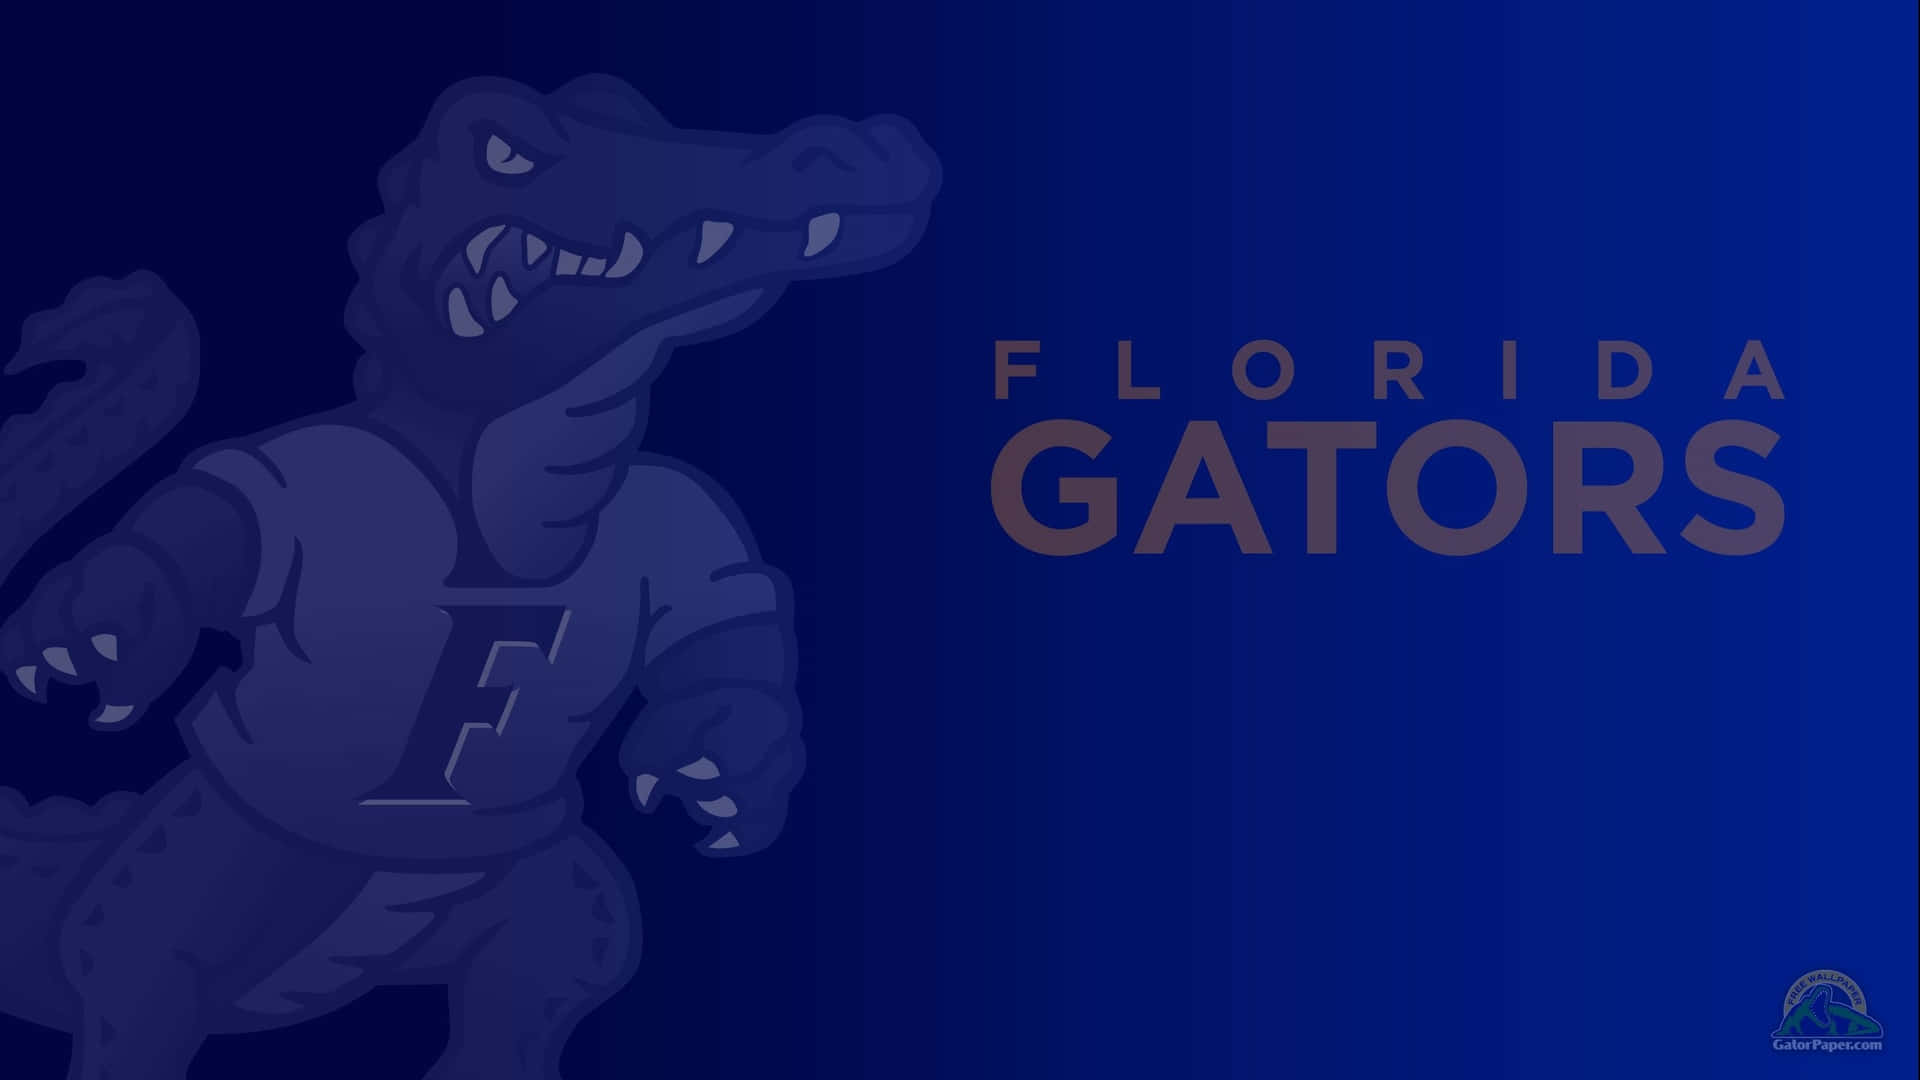 Denikoniska Bokstaven G Med Ränderna Från University Of Florida Gators. Wallpaper